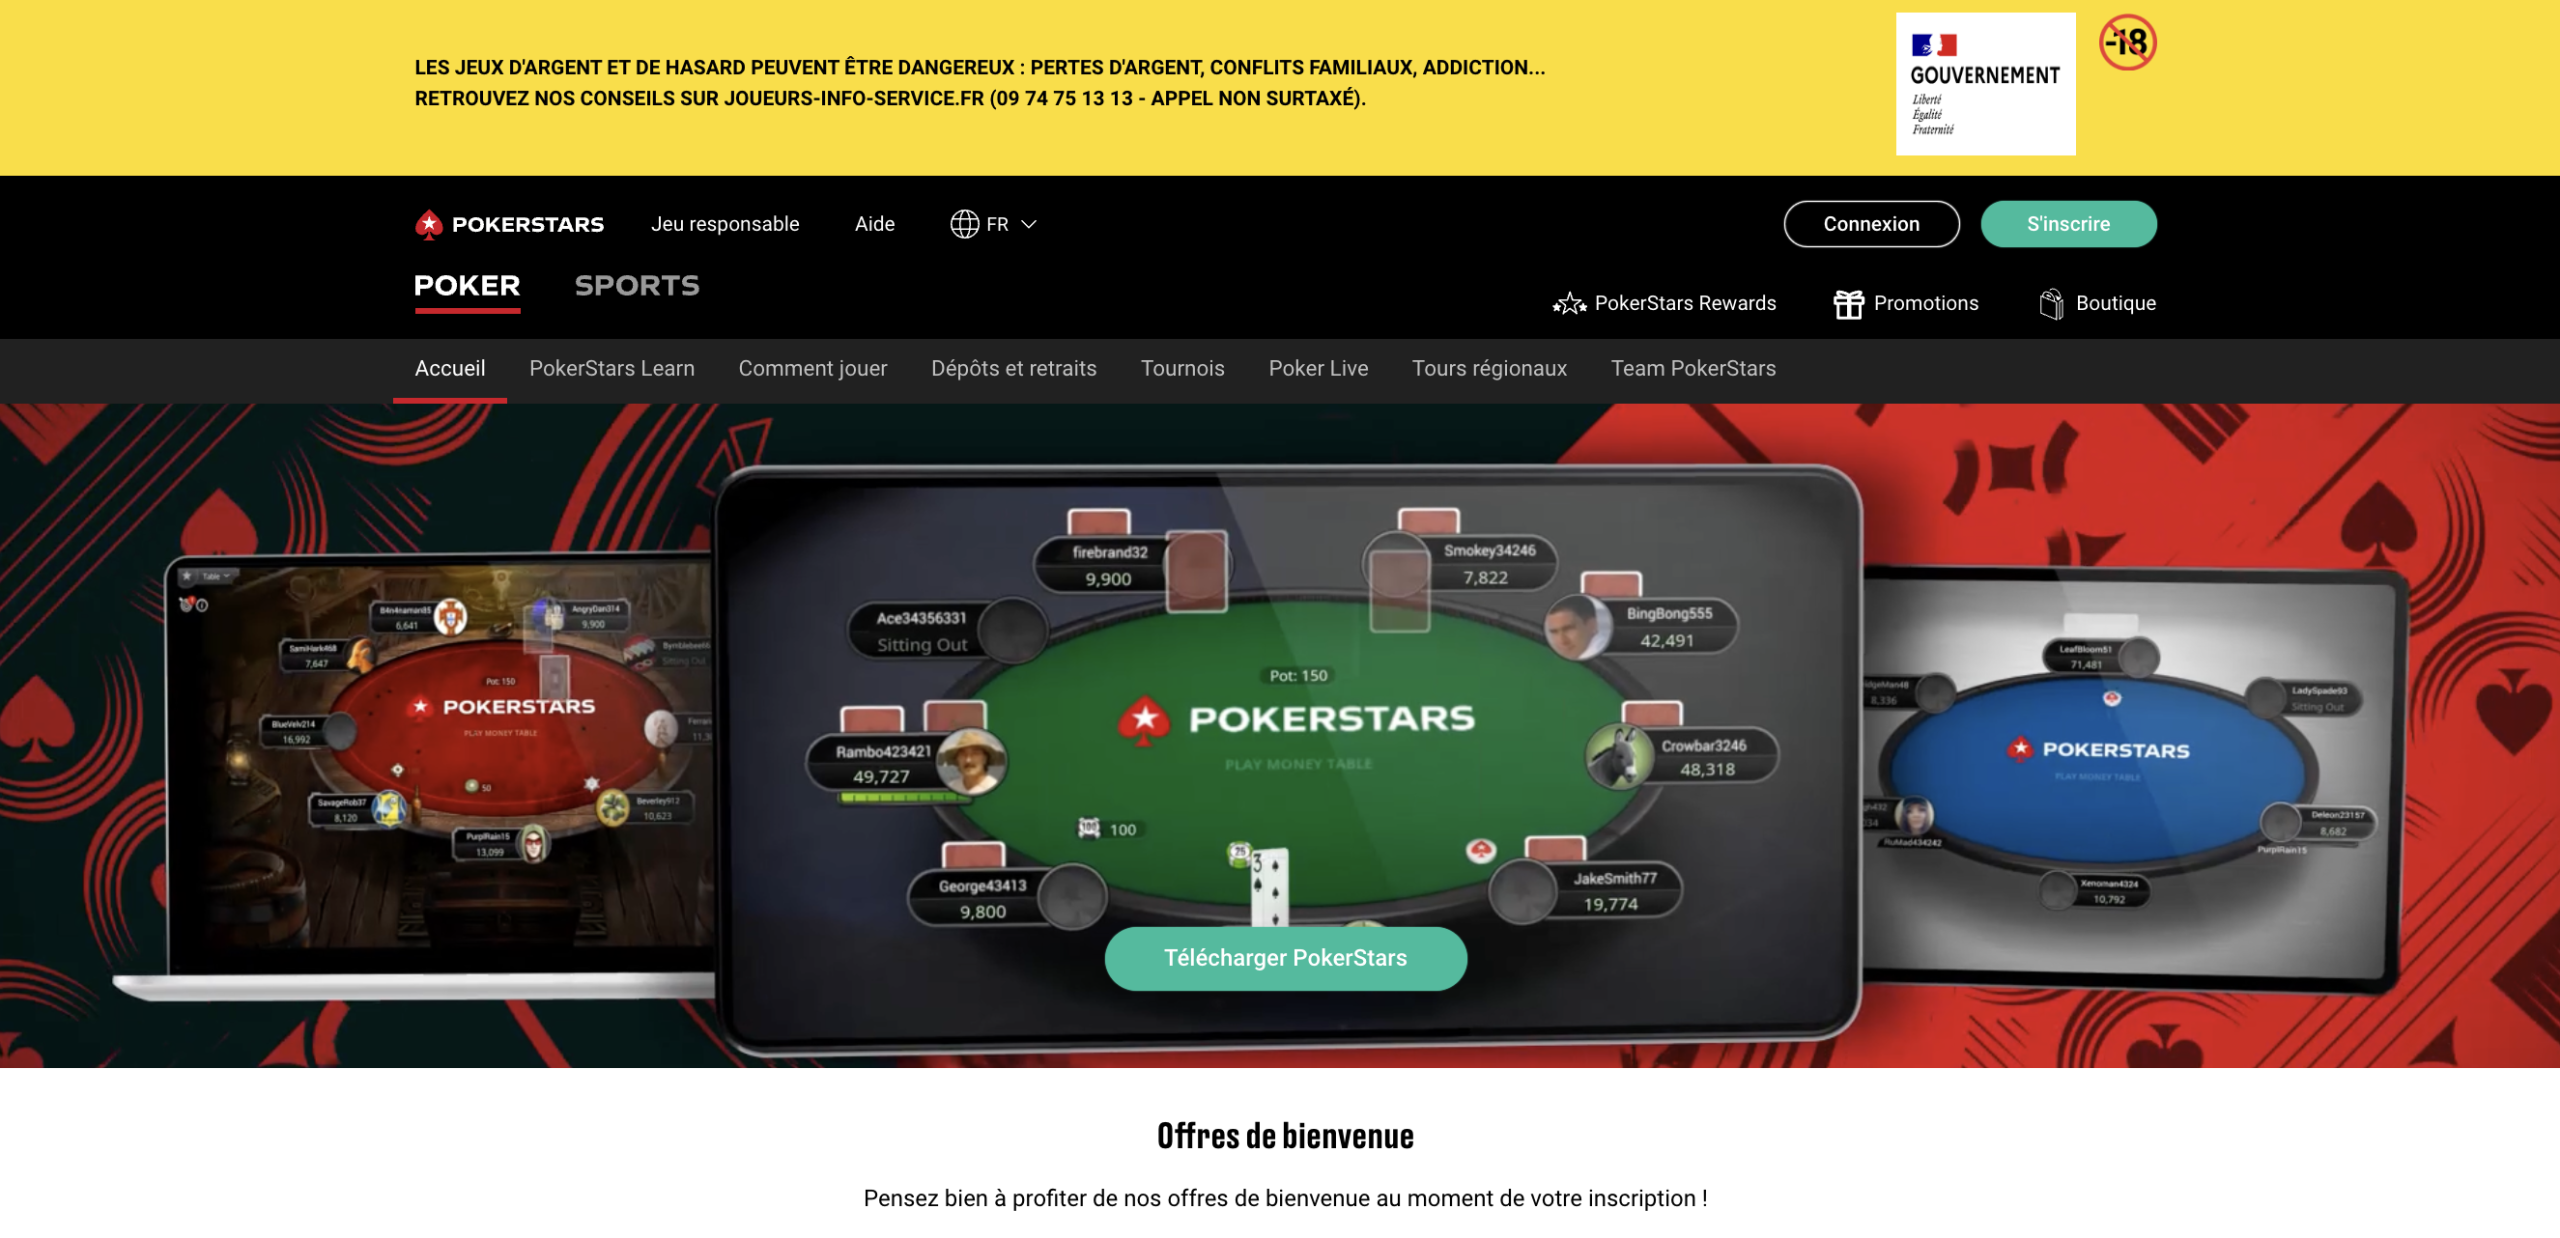 3. Pokerstars : Jouer au poker en ligne avec ce casino Maestro